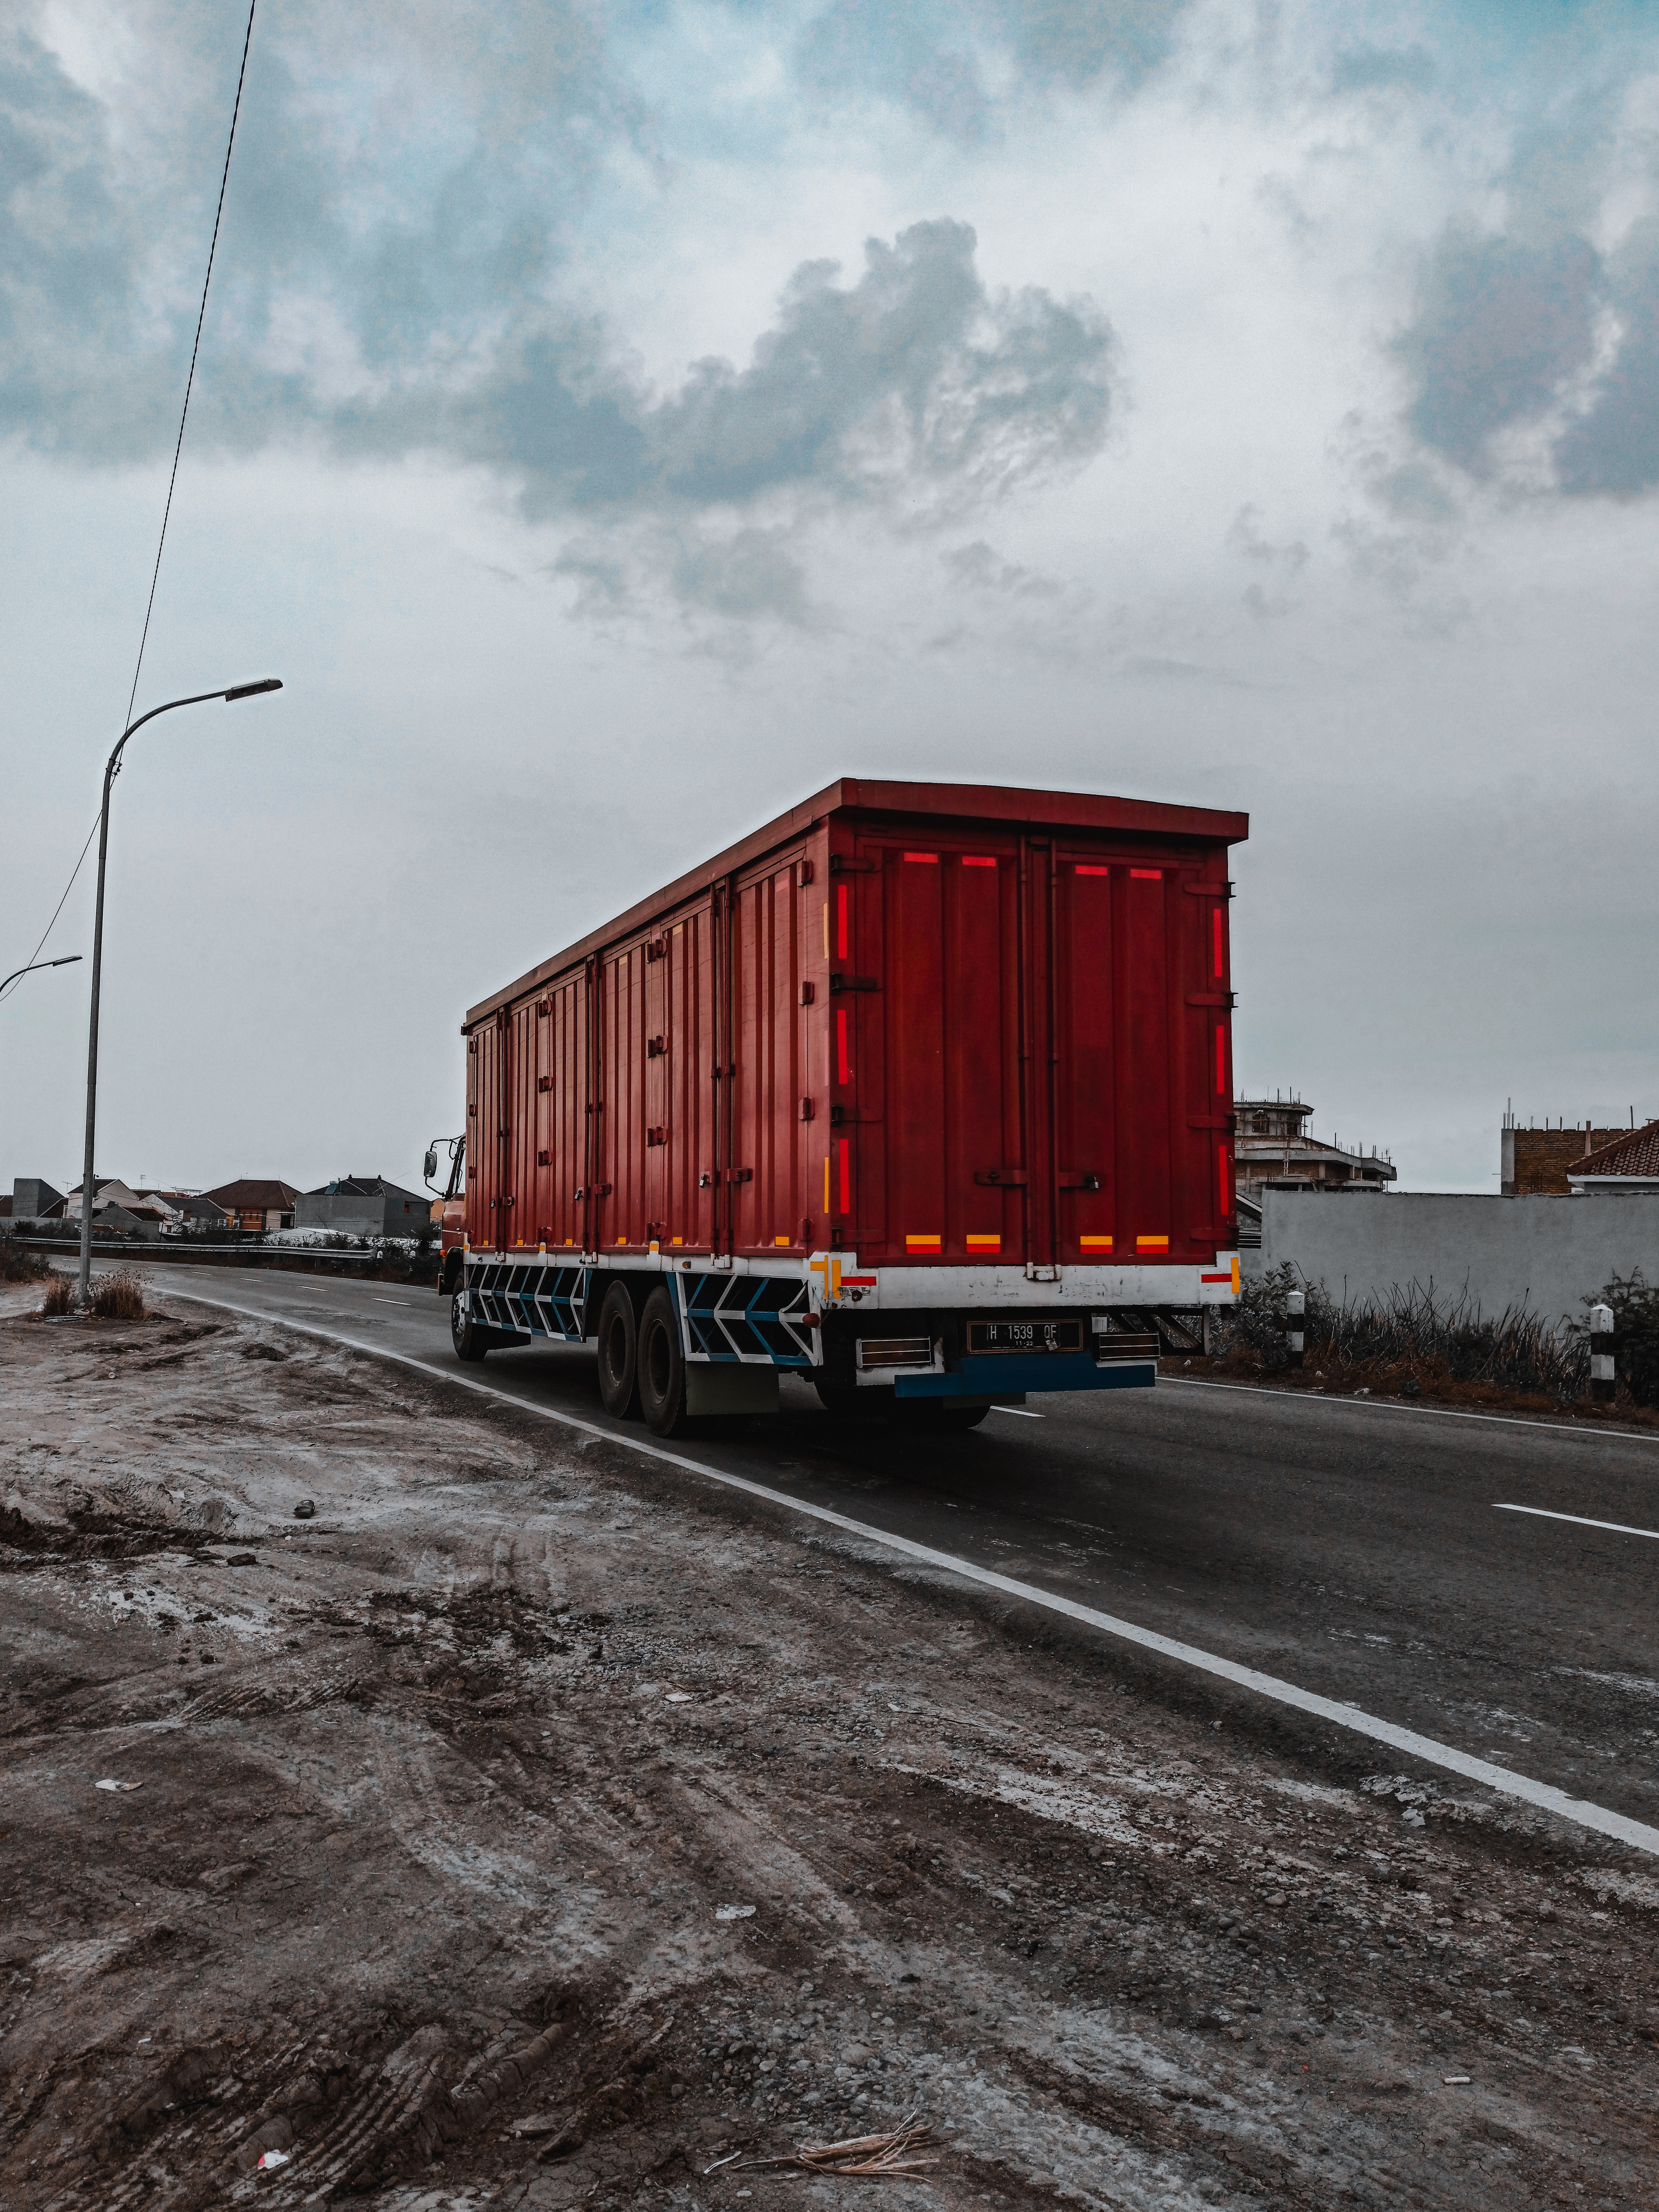 Taşımacılığın Kalbi Ankara Kocaeli Ambar Nakliye Şirketi ile Genel Taşımacılığın Keşfie